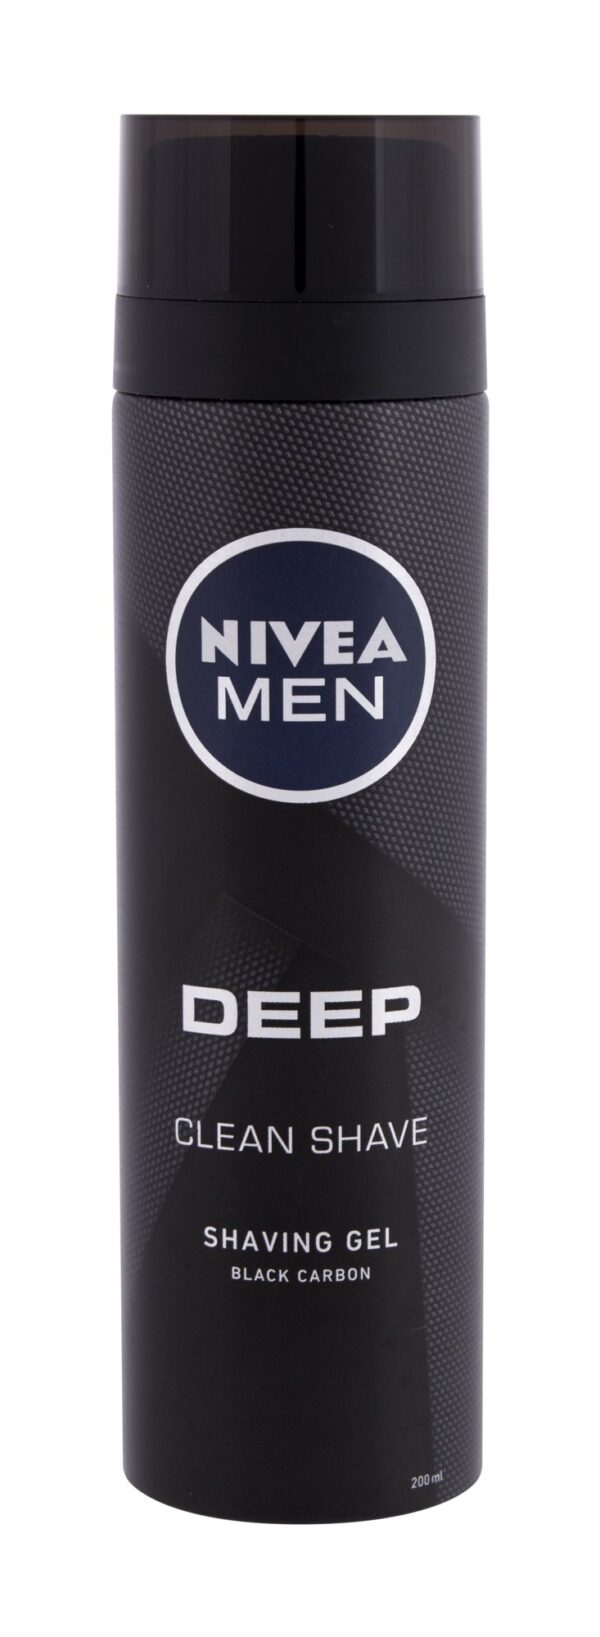 Żel do golenia Nivea Men Deep